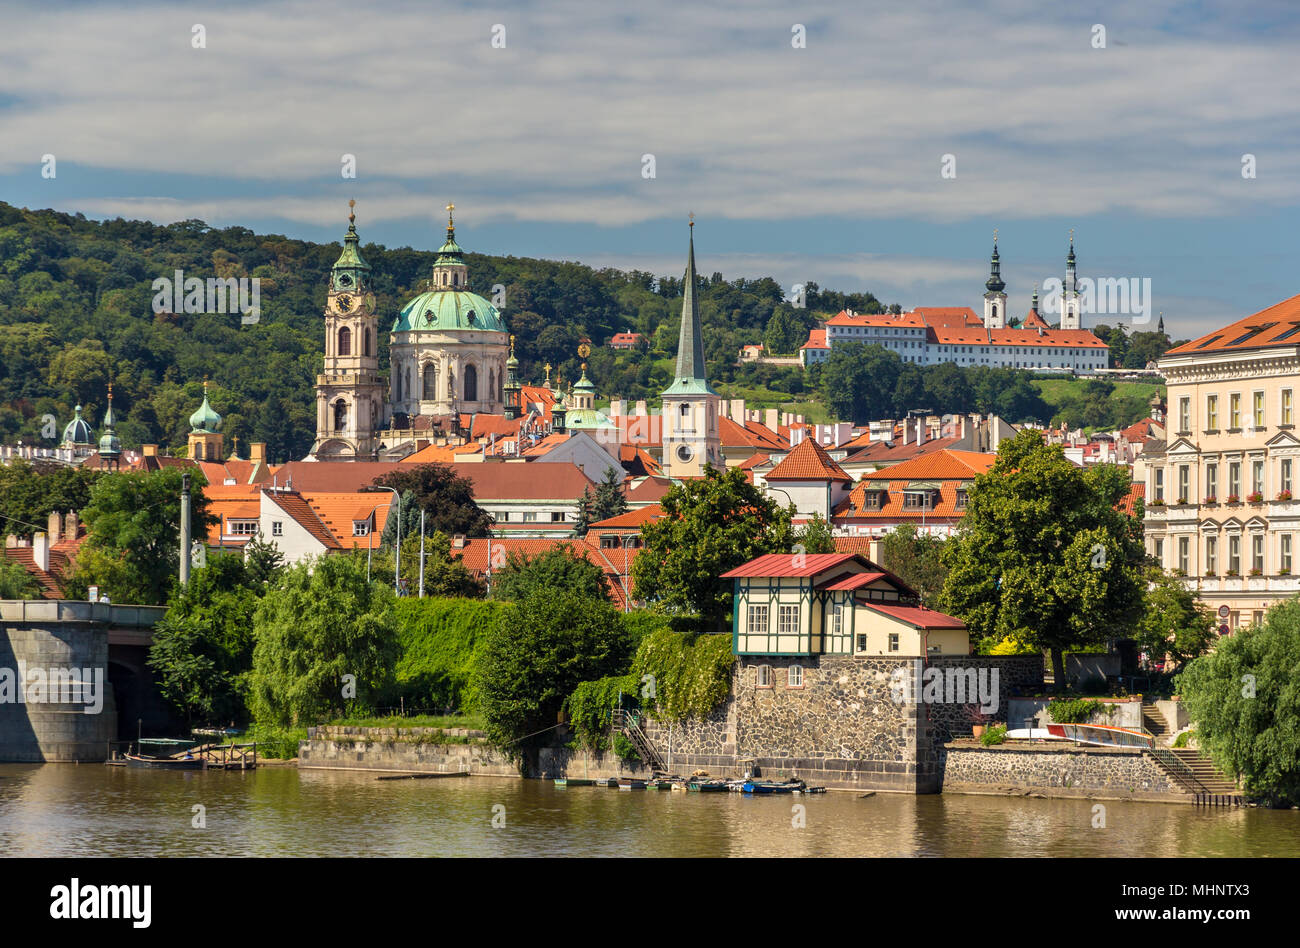 Anzeigen St. Nicholas Kirche und Kloster Strahov in Prag Stockfoto